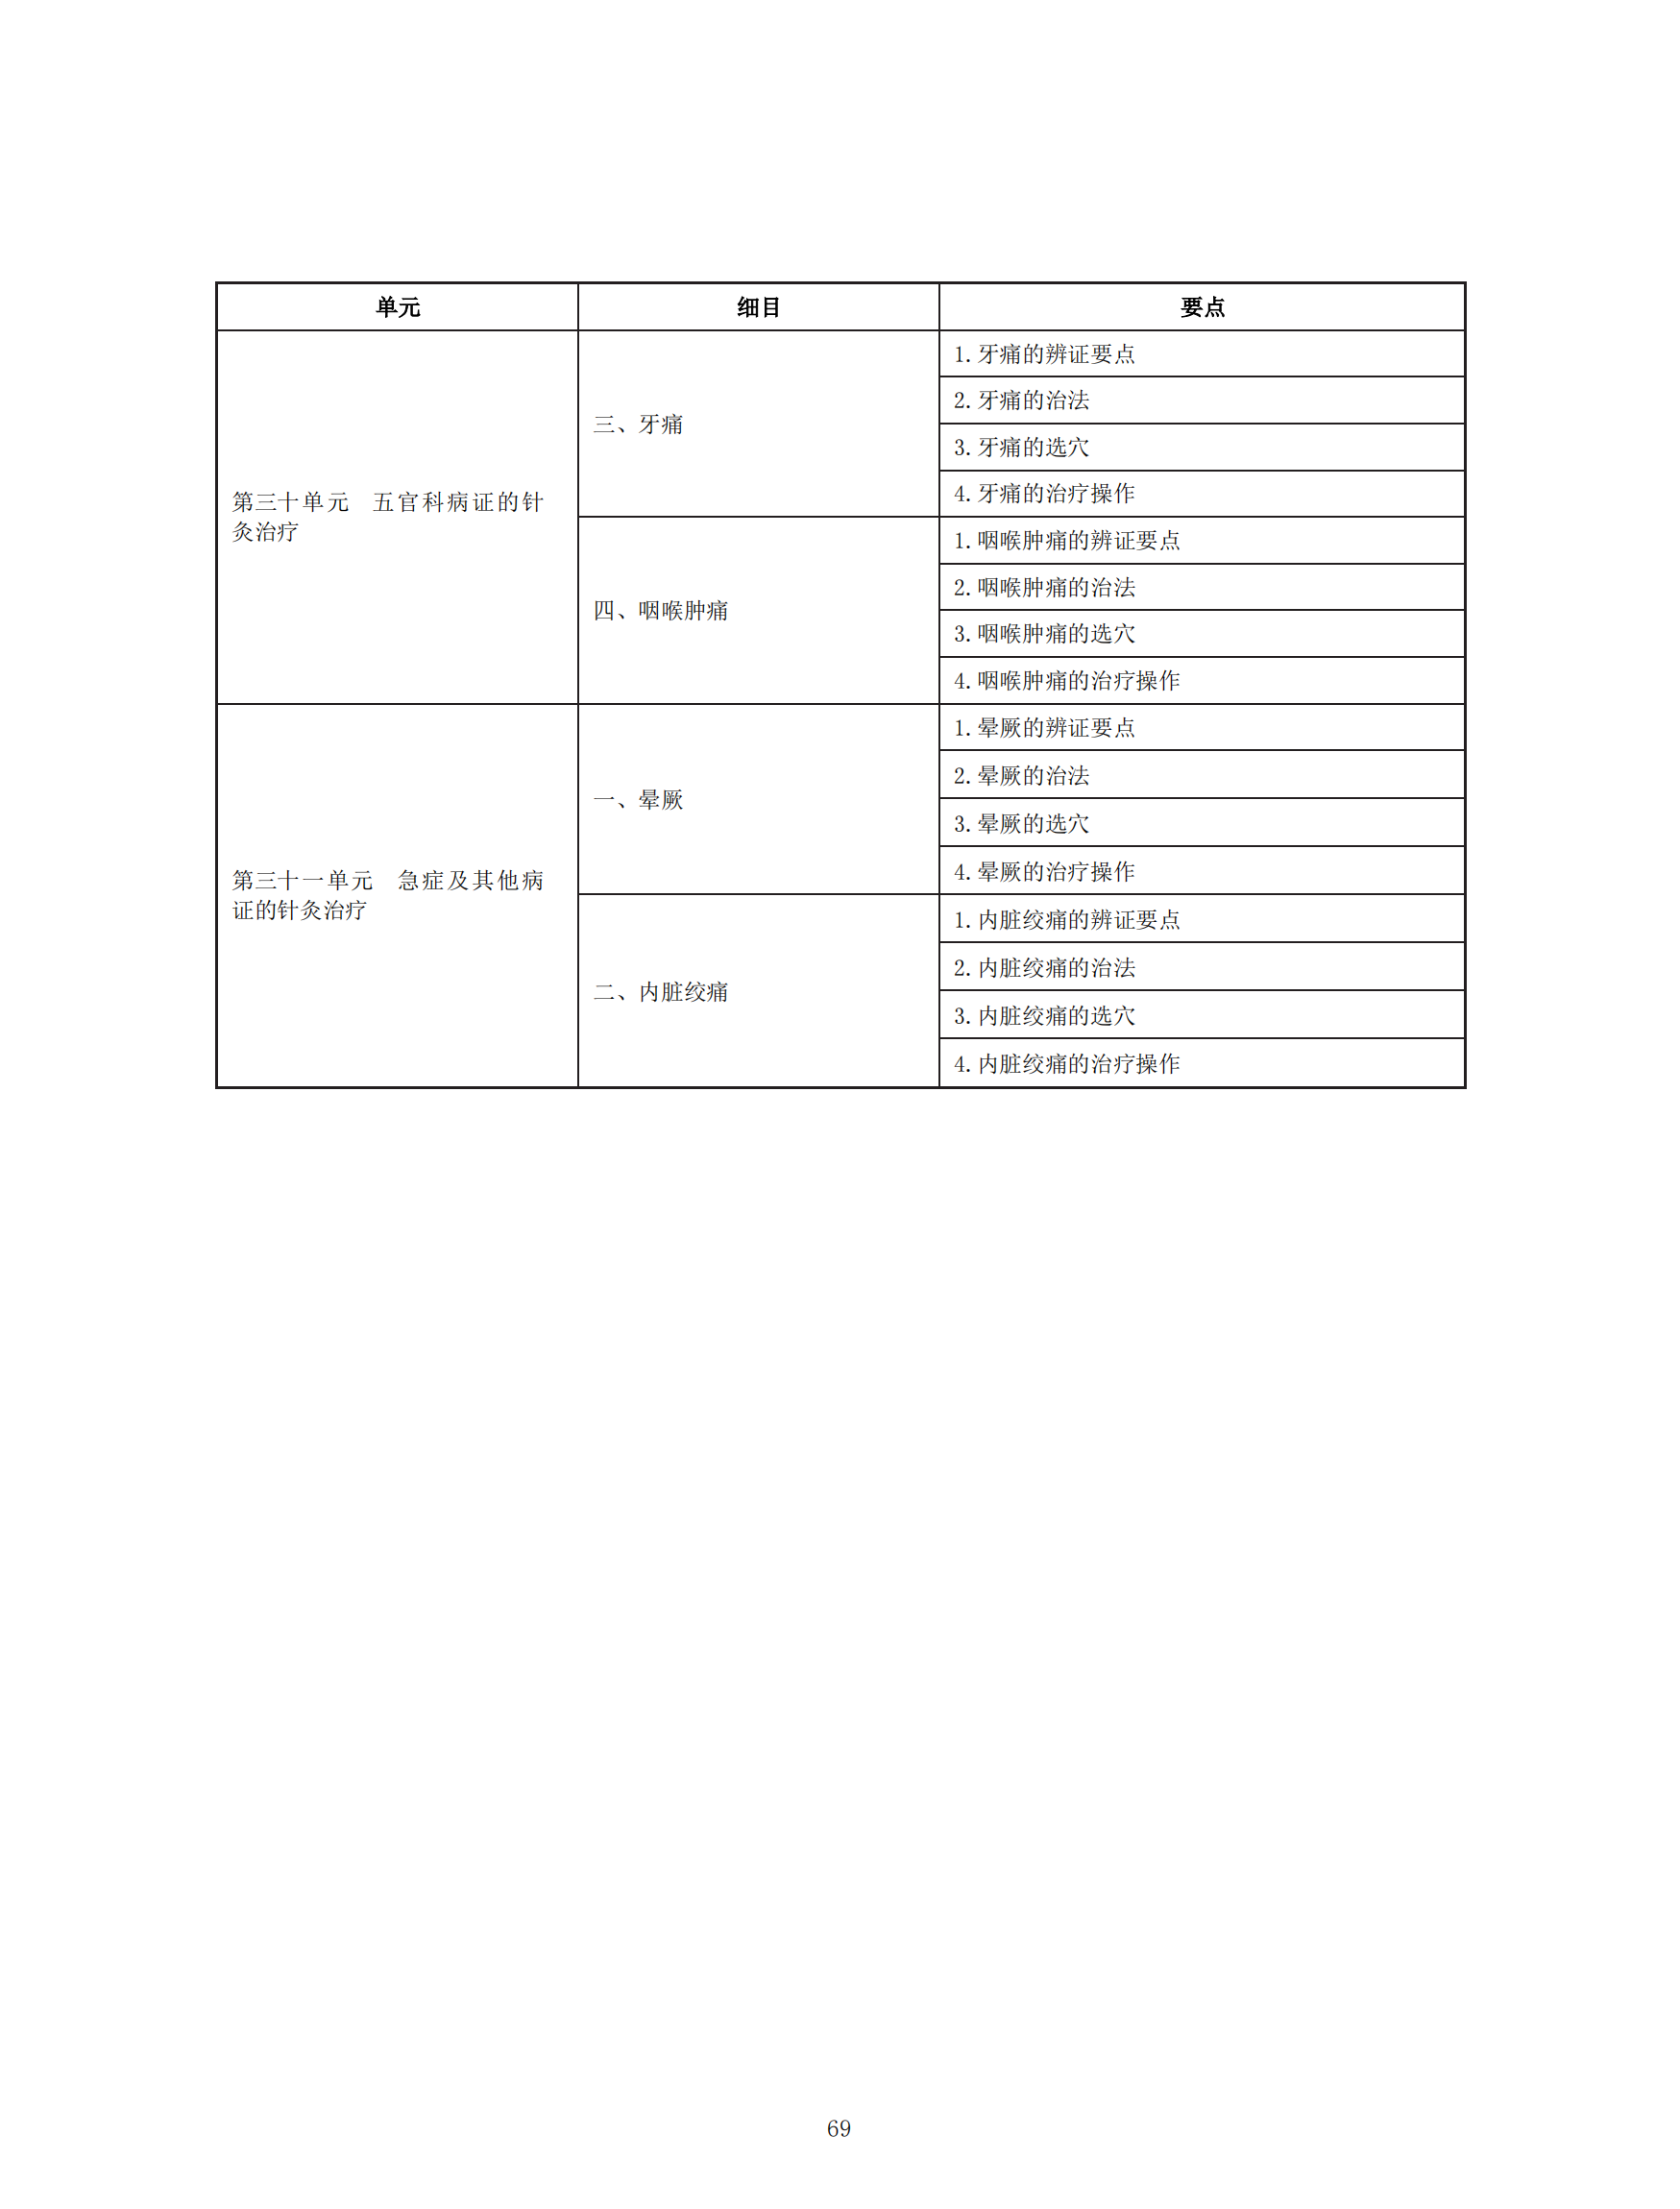 中医执业助理医师资格考试大纲（2020年版）_68